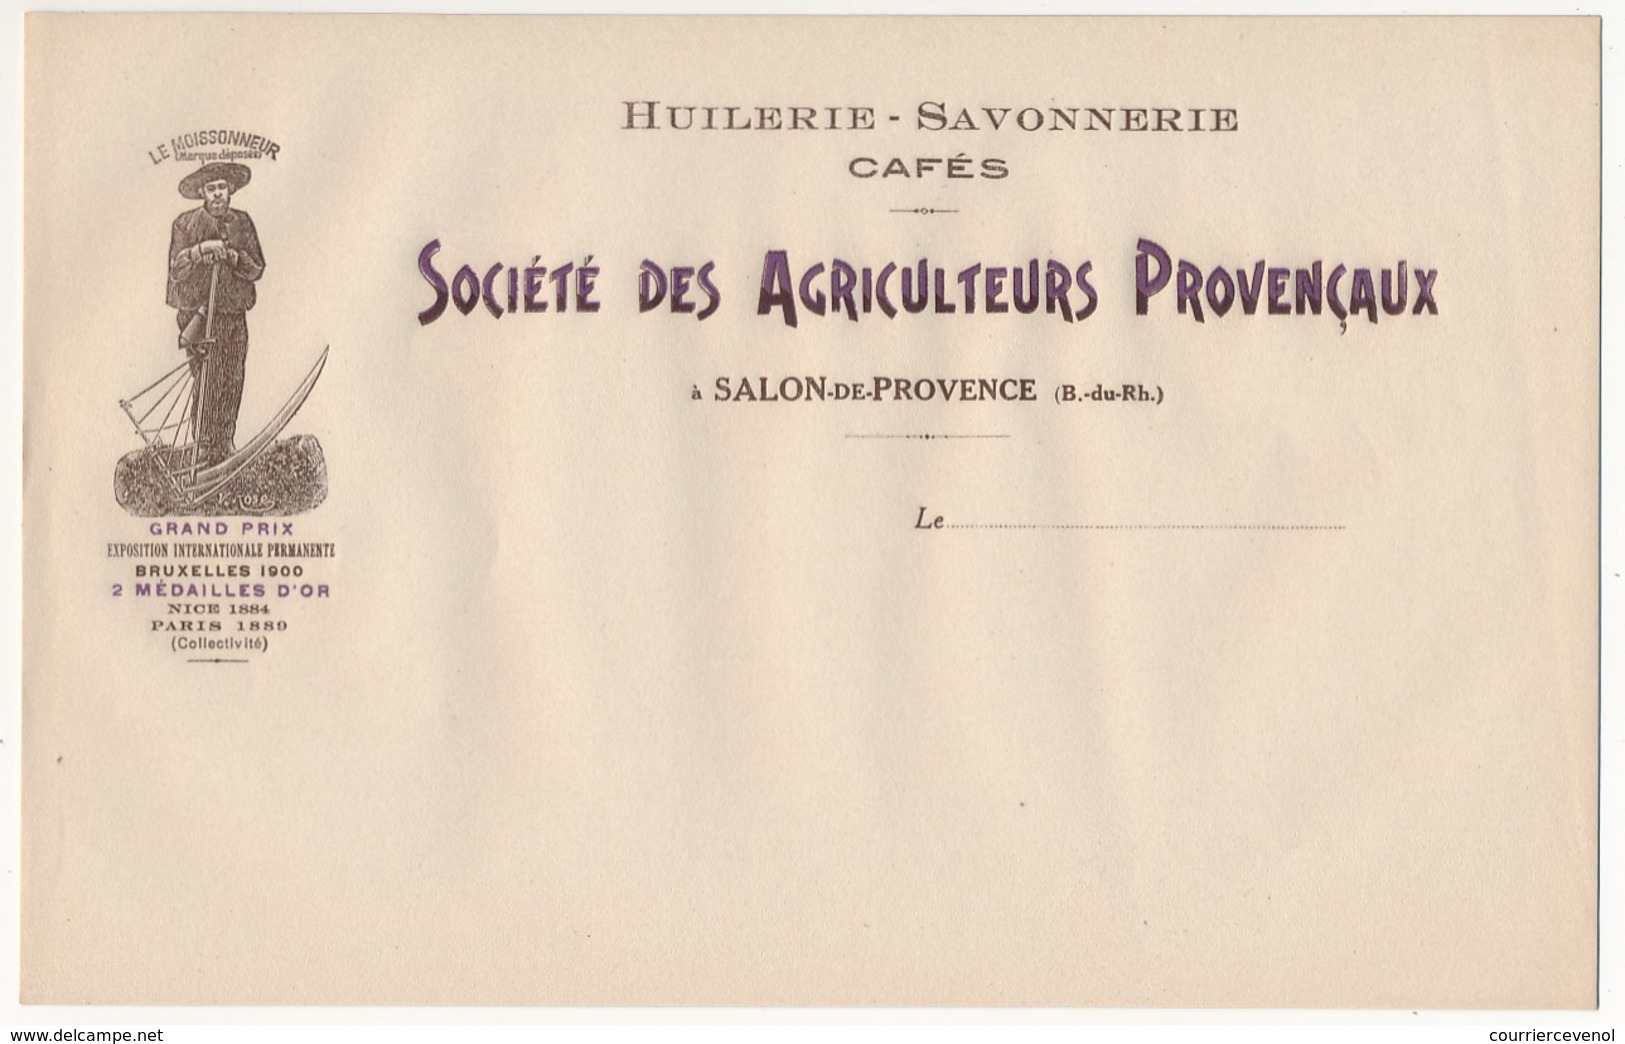 SALON De PROVENCE (B Du R) - En-tête Huilerie Savonnerie Cafés - Société Des Agriculteurs Provençaux (le Moissonneur) - Food